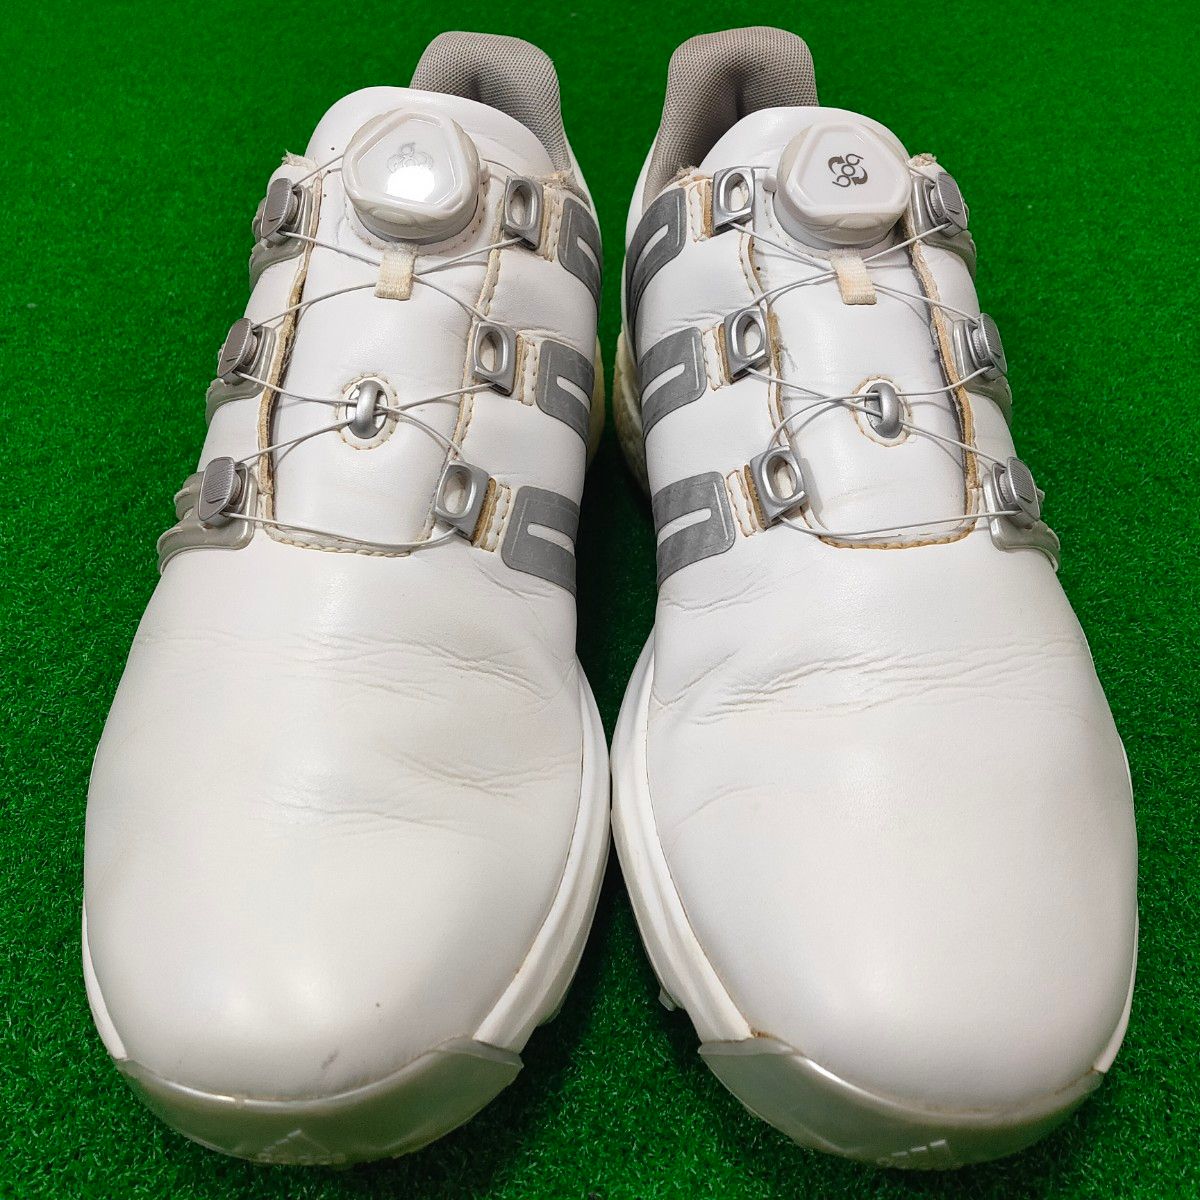 【スパイク新品交換済】adidas Golf パワーバンド ボア ブースト アディダス ゴルフシューズ 28cm